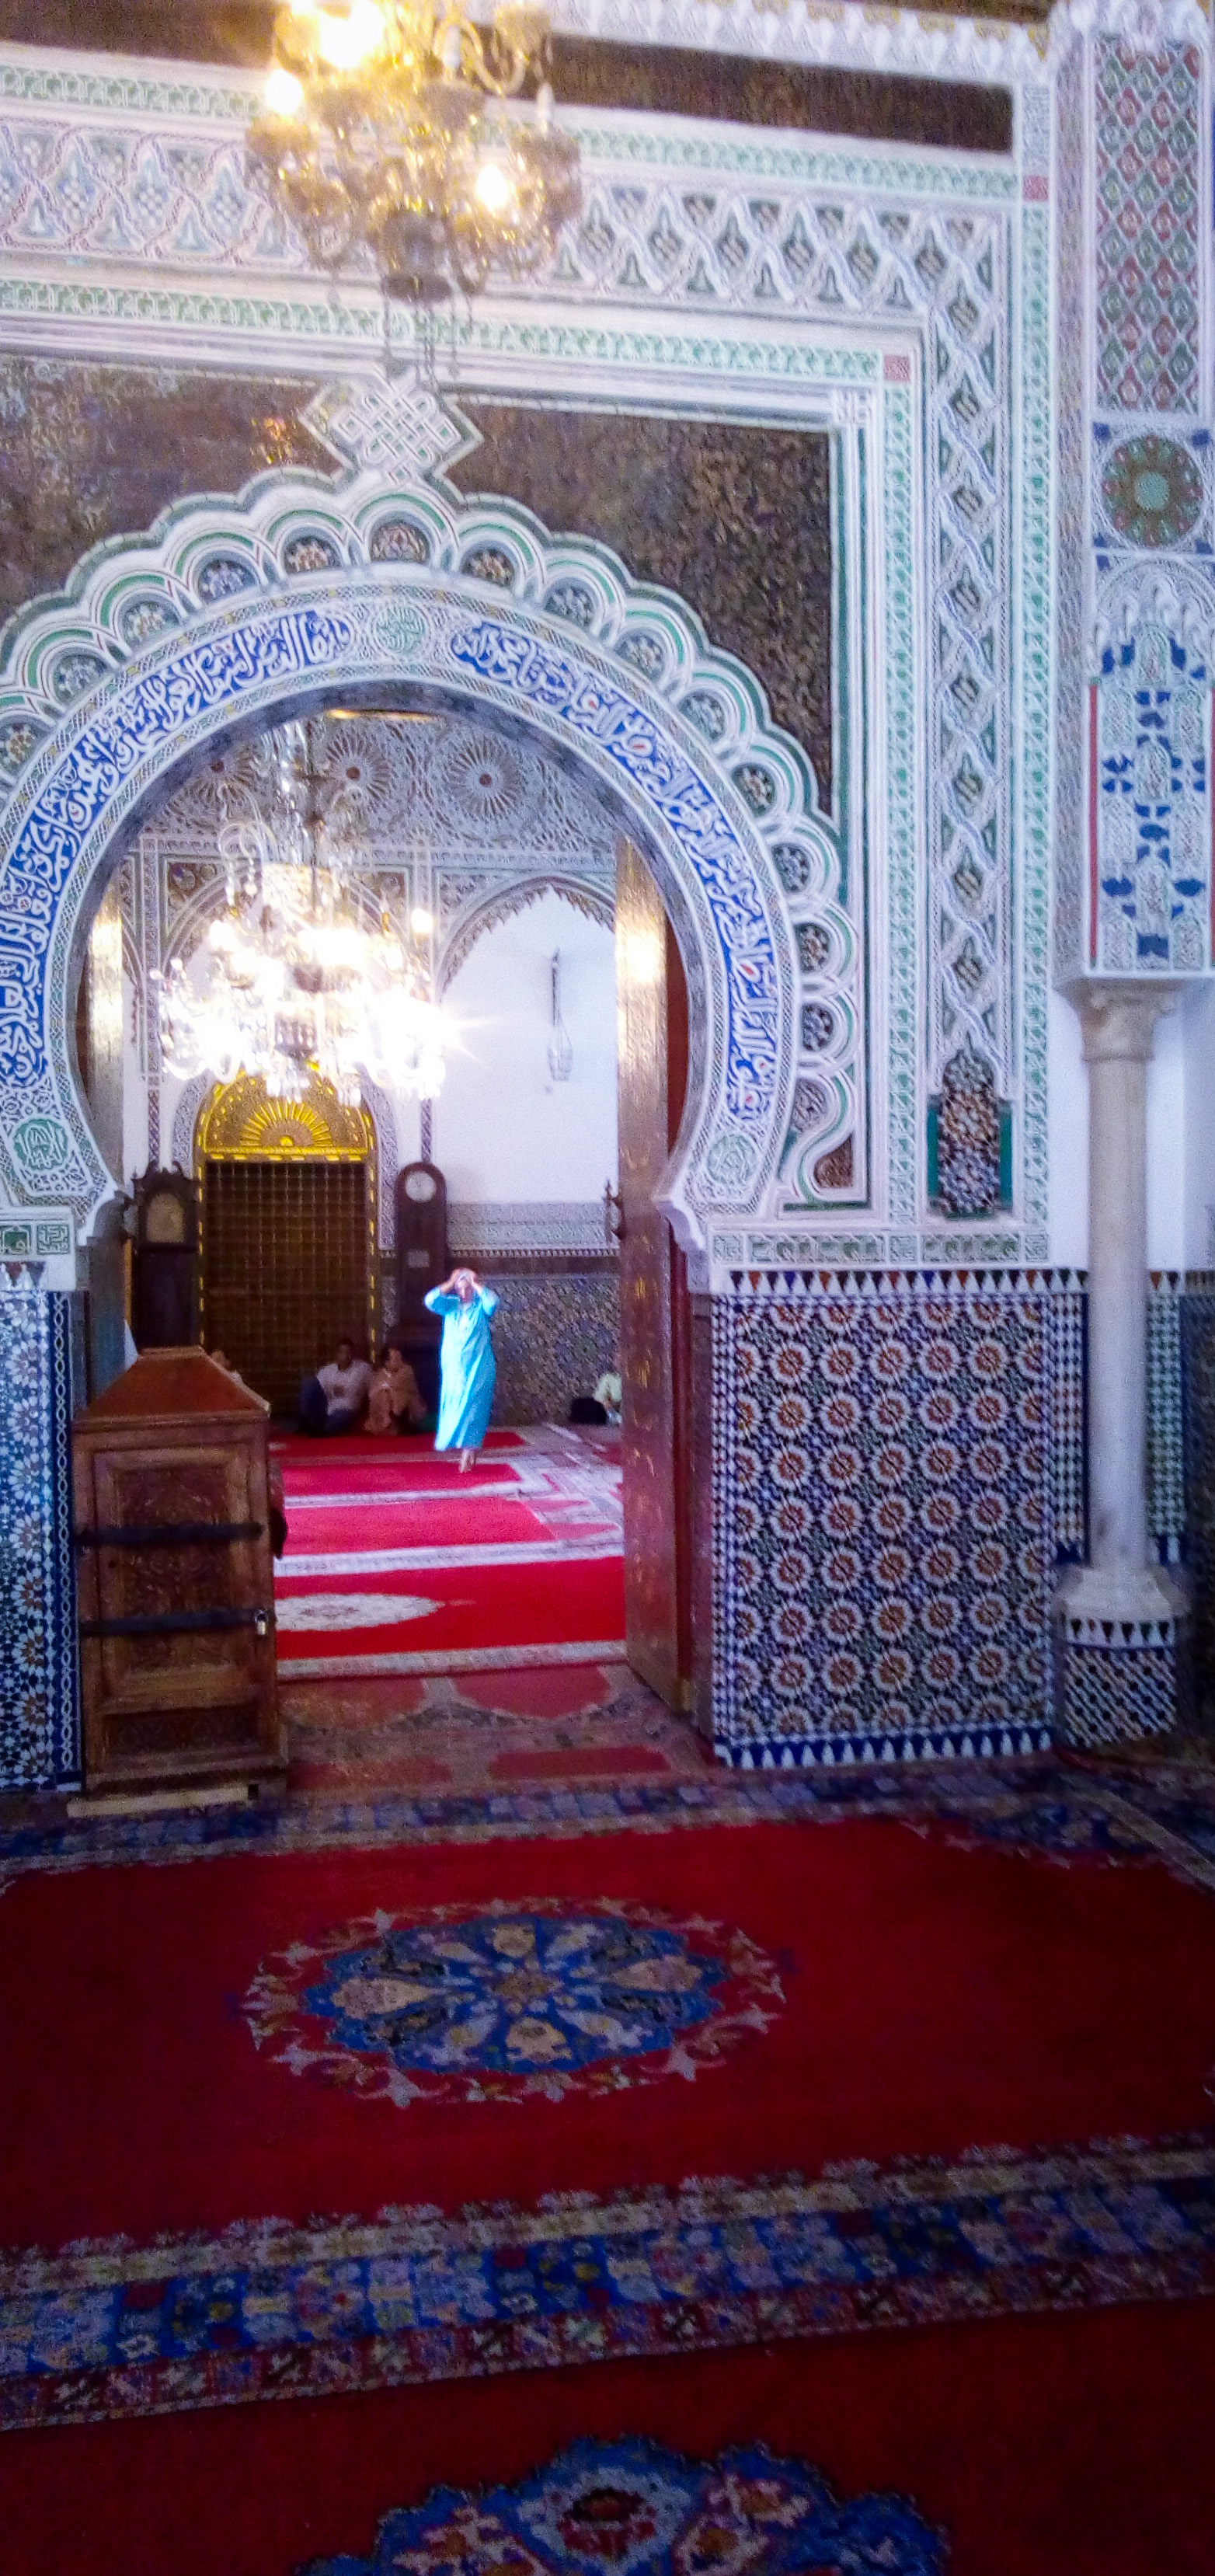 L'intérieur de la mosquée QARAOUIYINE: